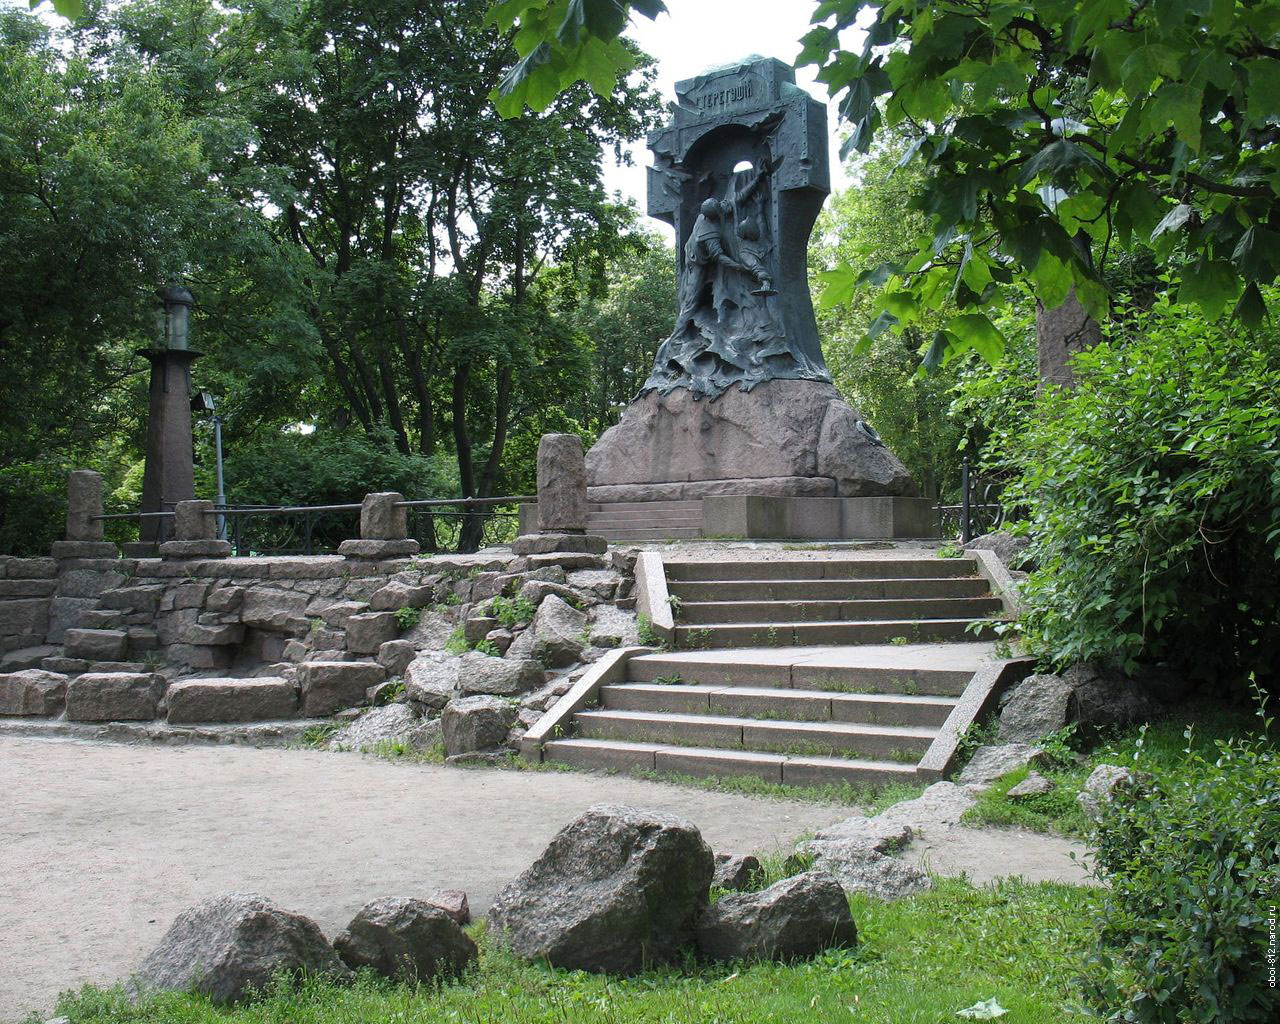 памятник миноносцу Стерегущий и его команде моряков, находится в Александровском парке, недалеко от станции метро Горьковская, Санкт-Петербург